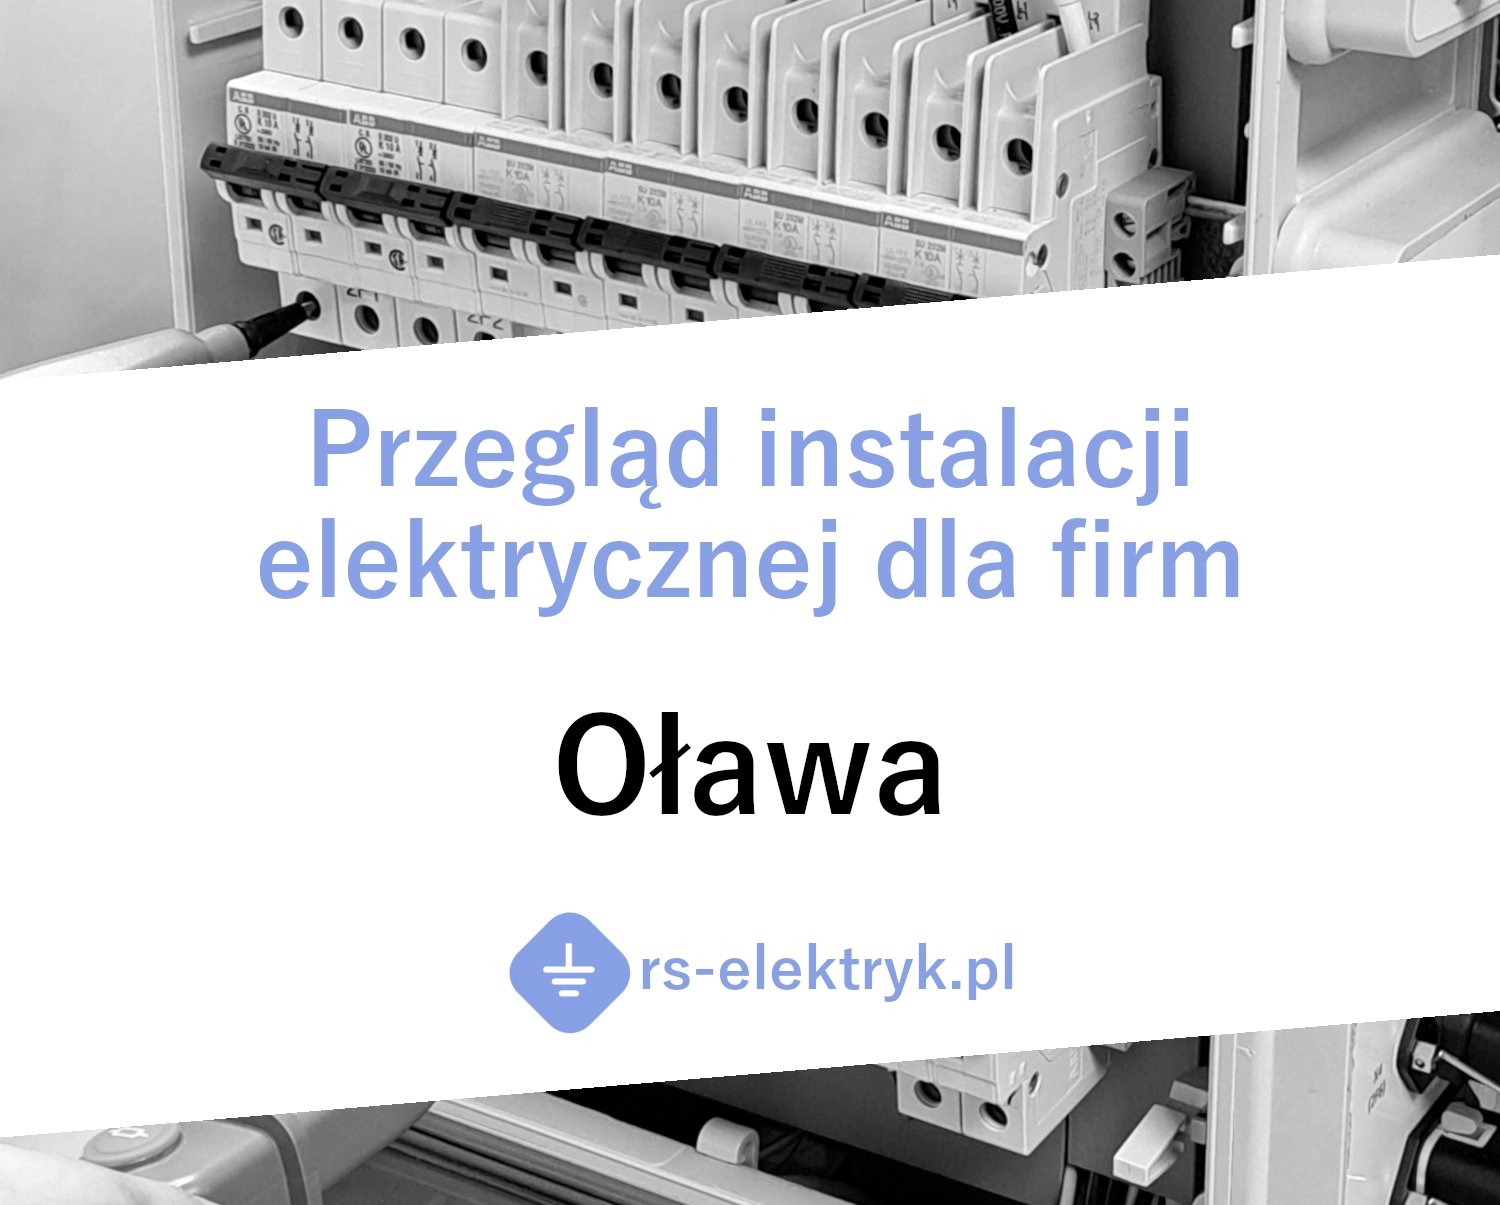 Przegląd instalacji elektrycznej dla firm (Oława)